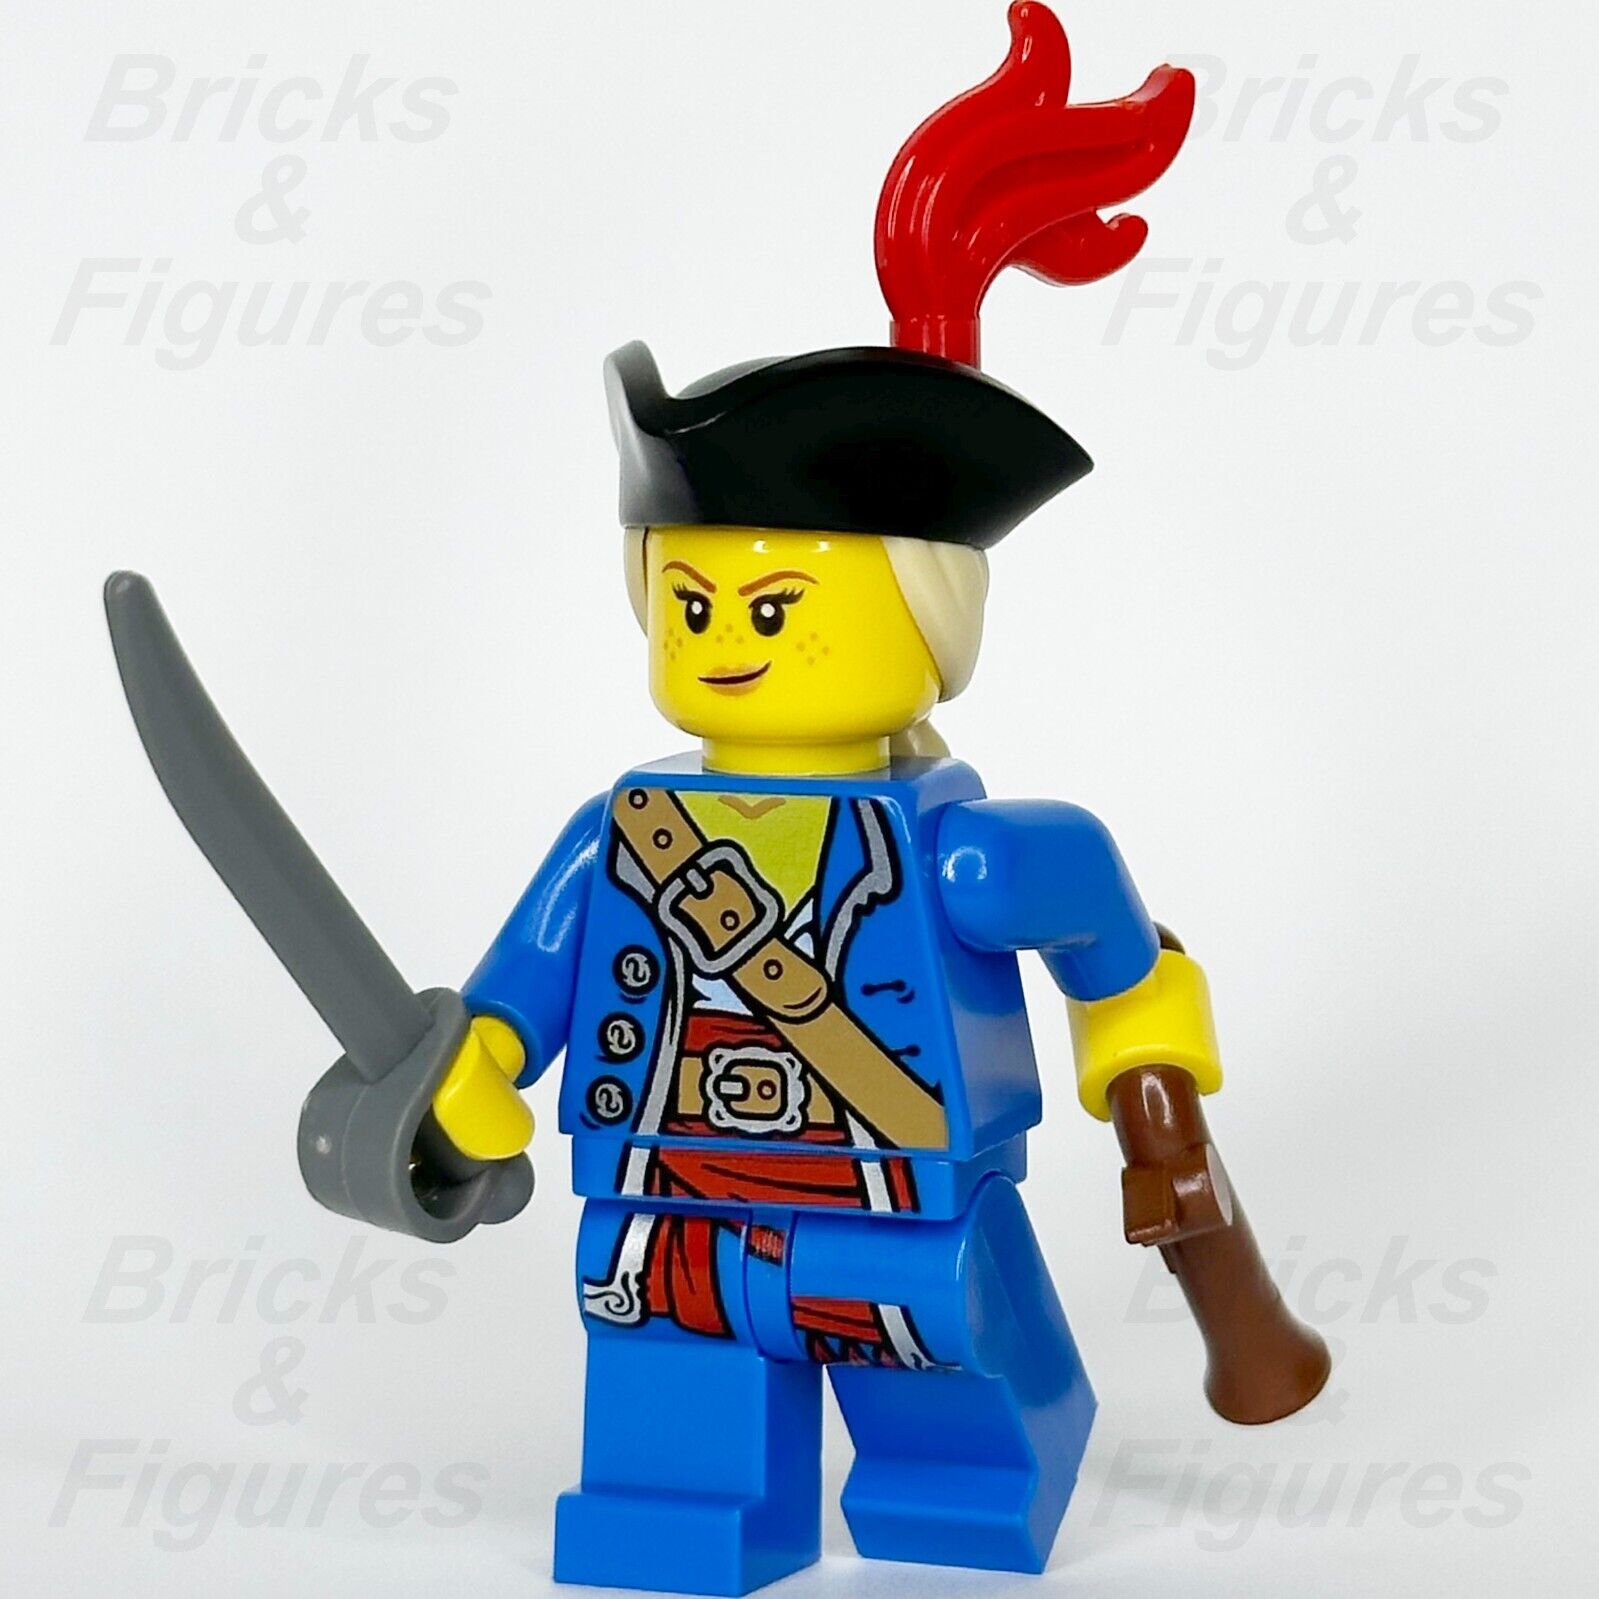 LEGO Pirate Minifigure Build-A-Minifigure Cutlass Sword Flintlock Gun